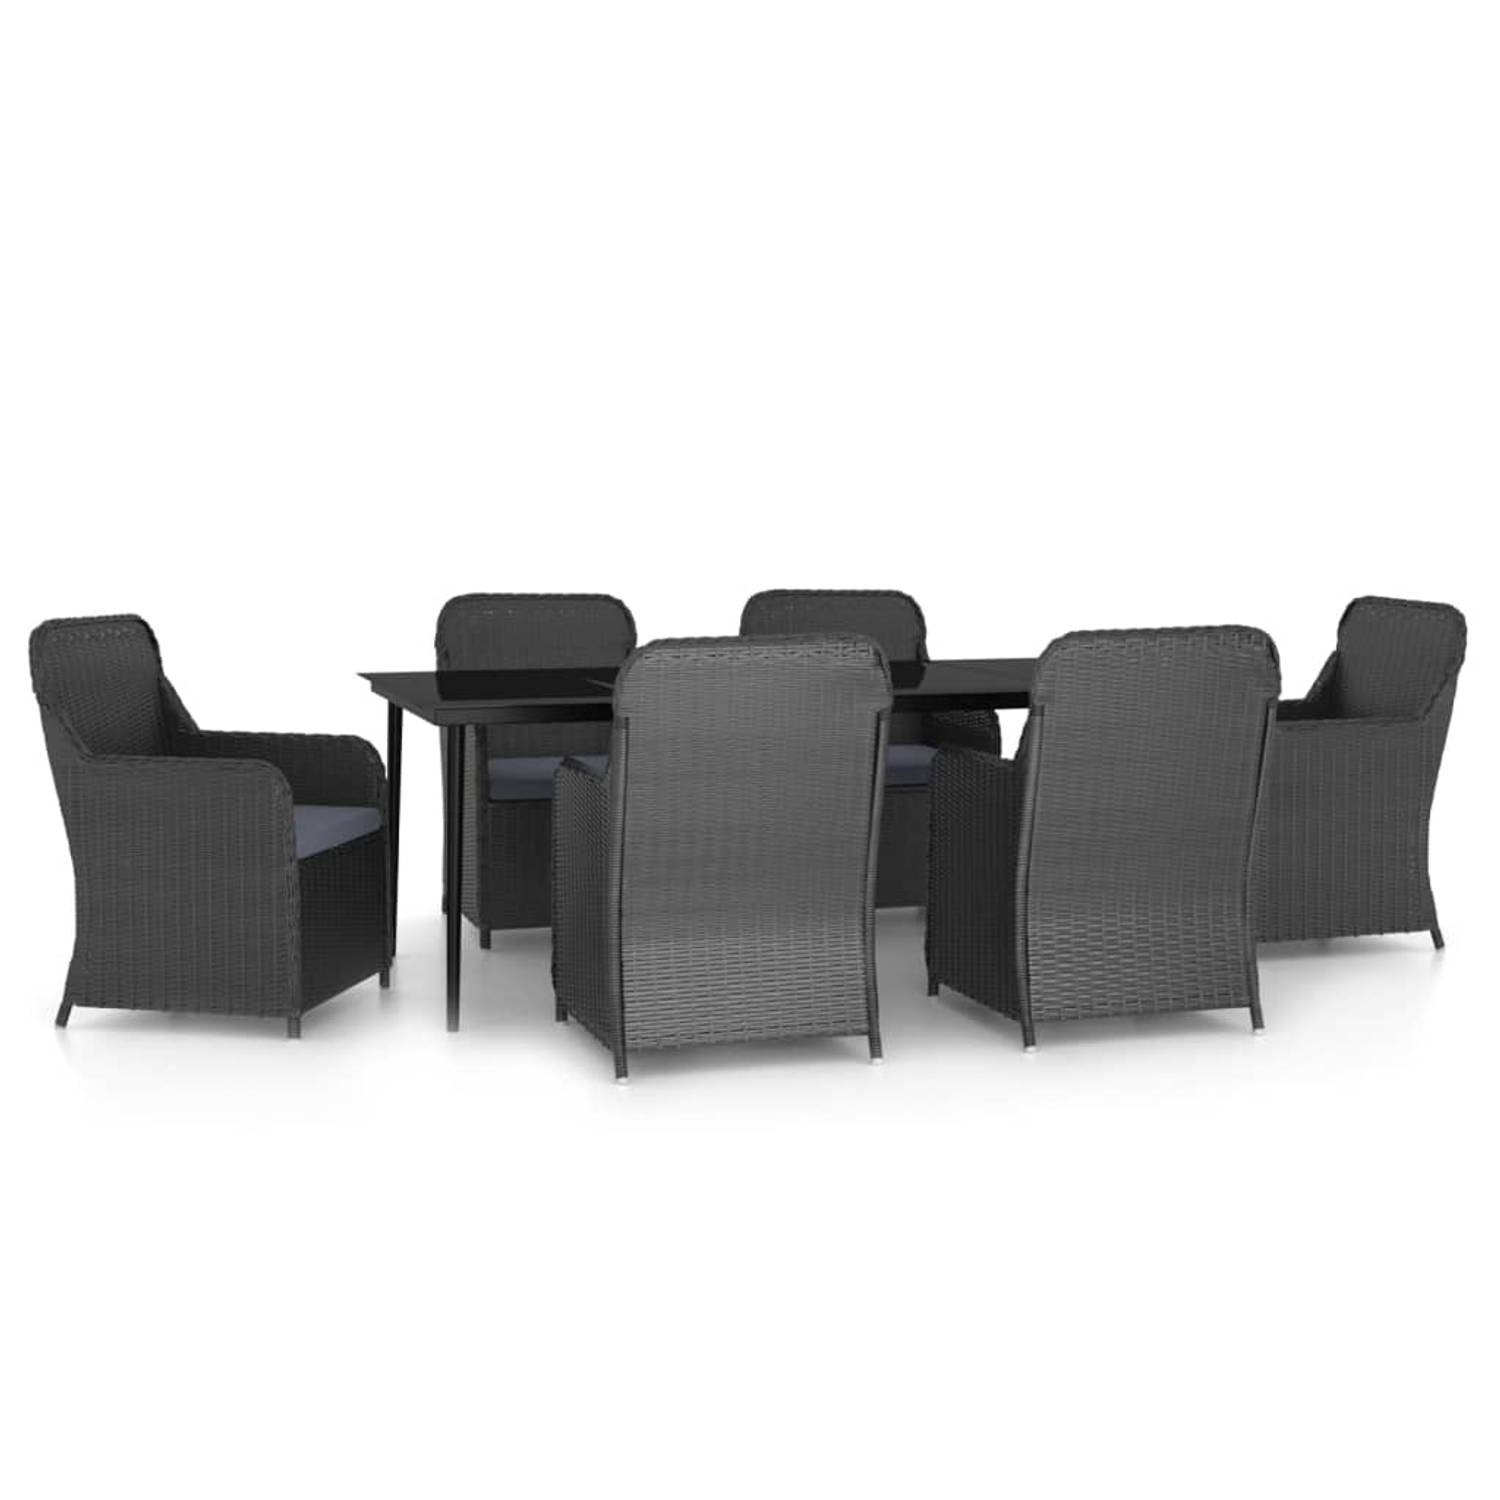 The Living Store Trendy tuinmeubelset - tafel 200x100x74 cm - 6 stoelen - zwart - donkergrijs kussen